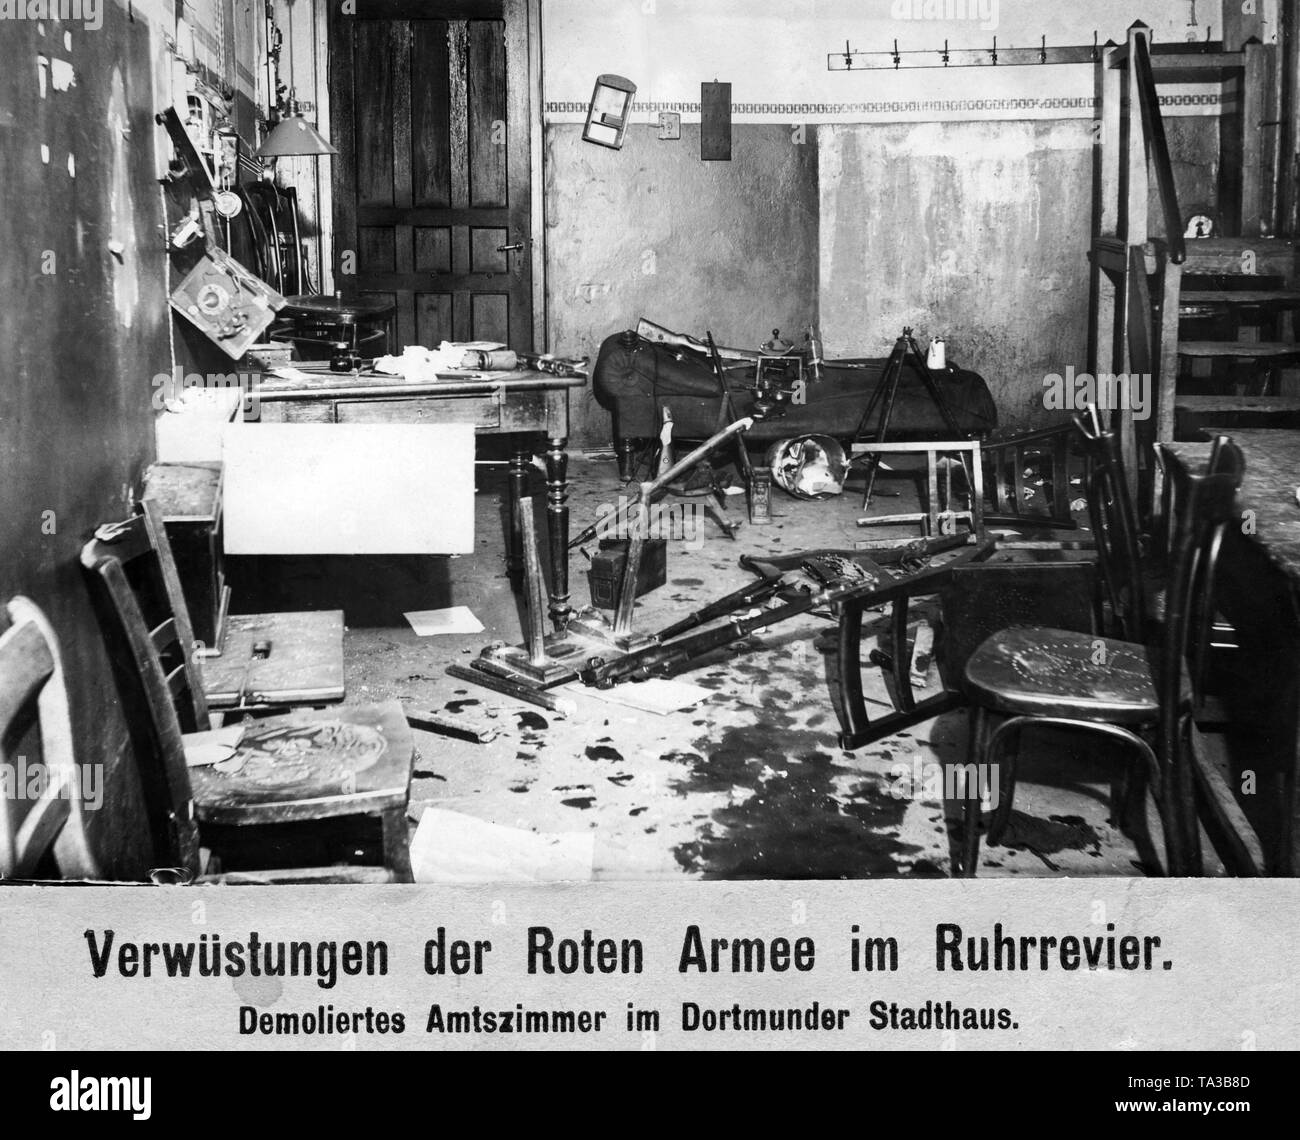 Due giorni dopo l'inizio dell'Kapp Putsch, una rivolta comunista scoppiata nella regione della Ruhr. Armati lavoratori assumere il potere nella regione della Ruhr. Freikorps, intervenuta sul governo dell ordine, viene respinto e soffre di pesanti perdite. Essa è stata per la prima volta il 2 aprile, quando la Reichswehr intervenne, quando l'esercito rosso dovuto ritirare. Dopo sanguinose battaglie la Reichswehr è riuscito a ripristinare il vecchio ordine entro il decimo giorno del mese di maggio. Questa fotografia mostra una delle numerose camere ufficio in Dortmund Town Hall, devastato durante il ritiro dell'Esercito Rosso. Foto Stock